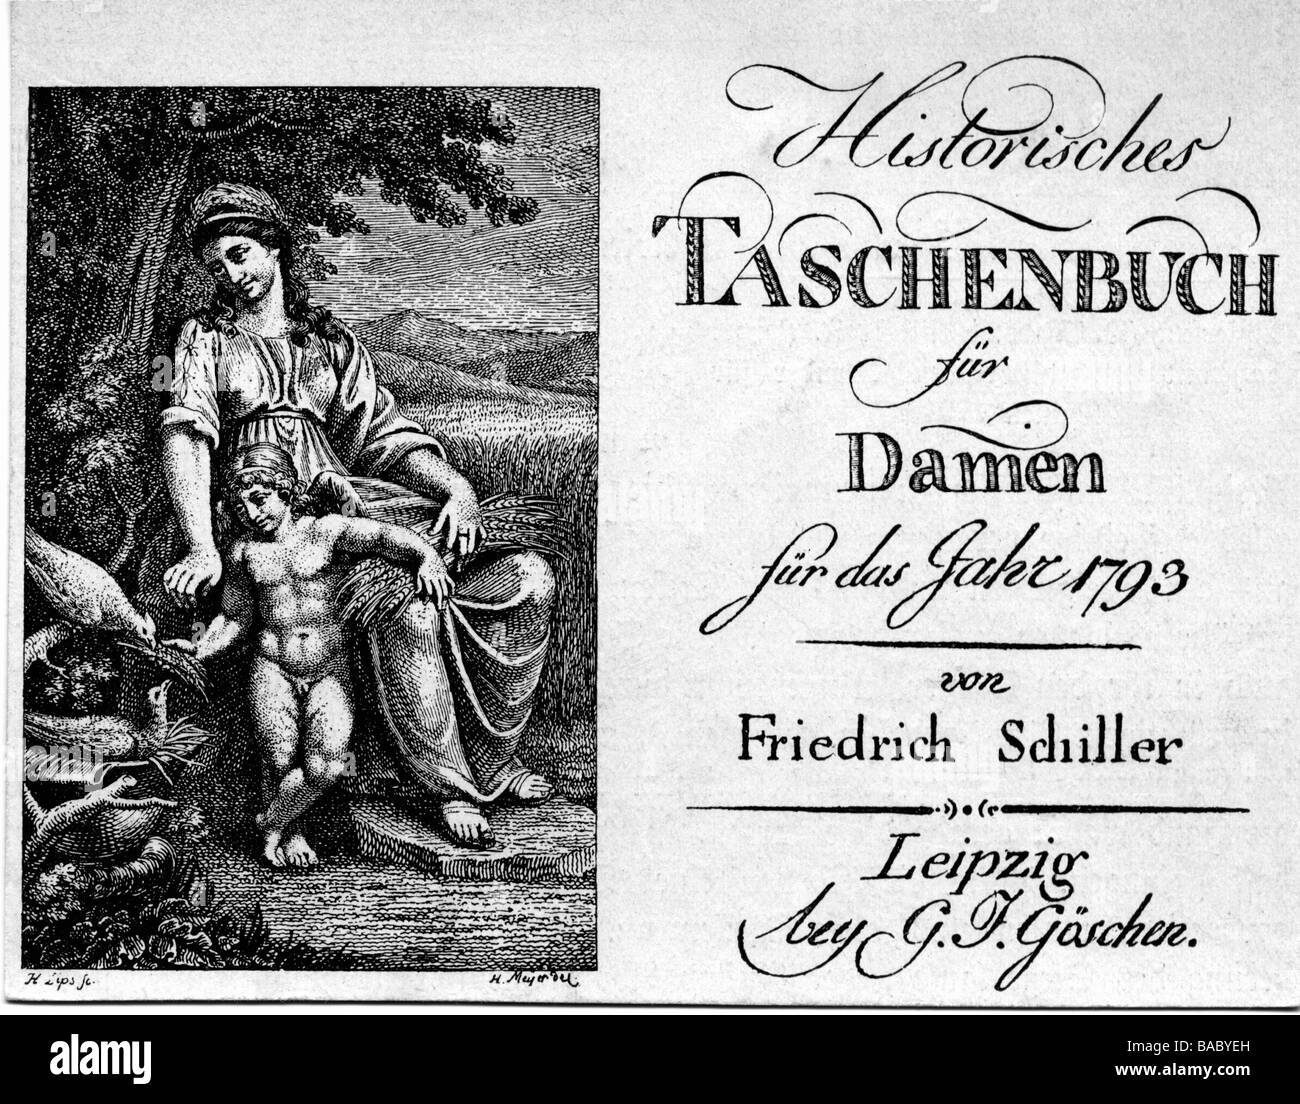 Schiller, Friedrich, 10.11.1759 - 9.5.1805, German author / writer, 'Historisches Taschenbuch für Damen', 1793, published by Georg Joachim Göschen, Leipzig, title copper by H. Lips after H. Meyer, Stock Photo